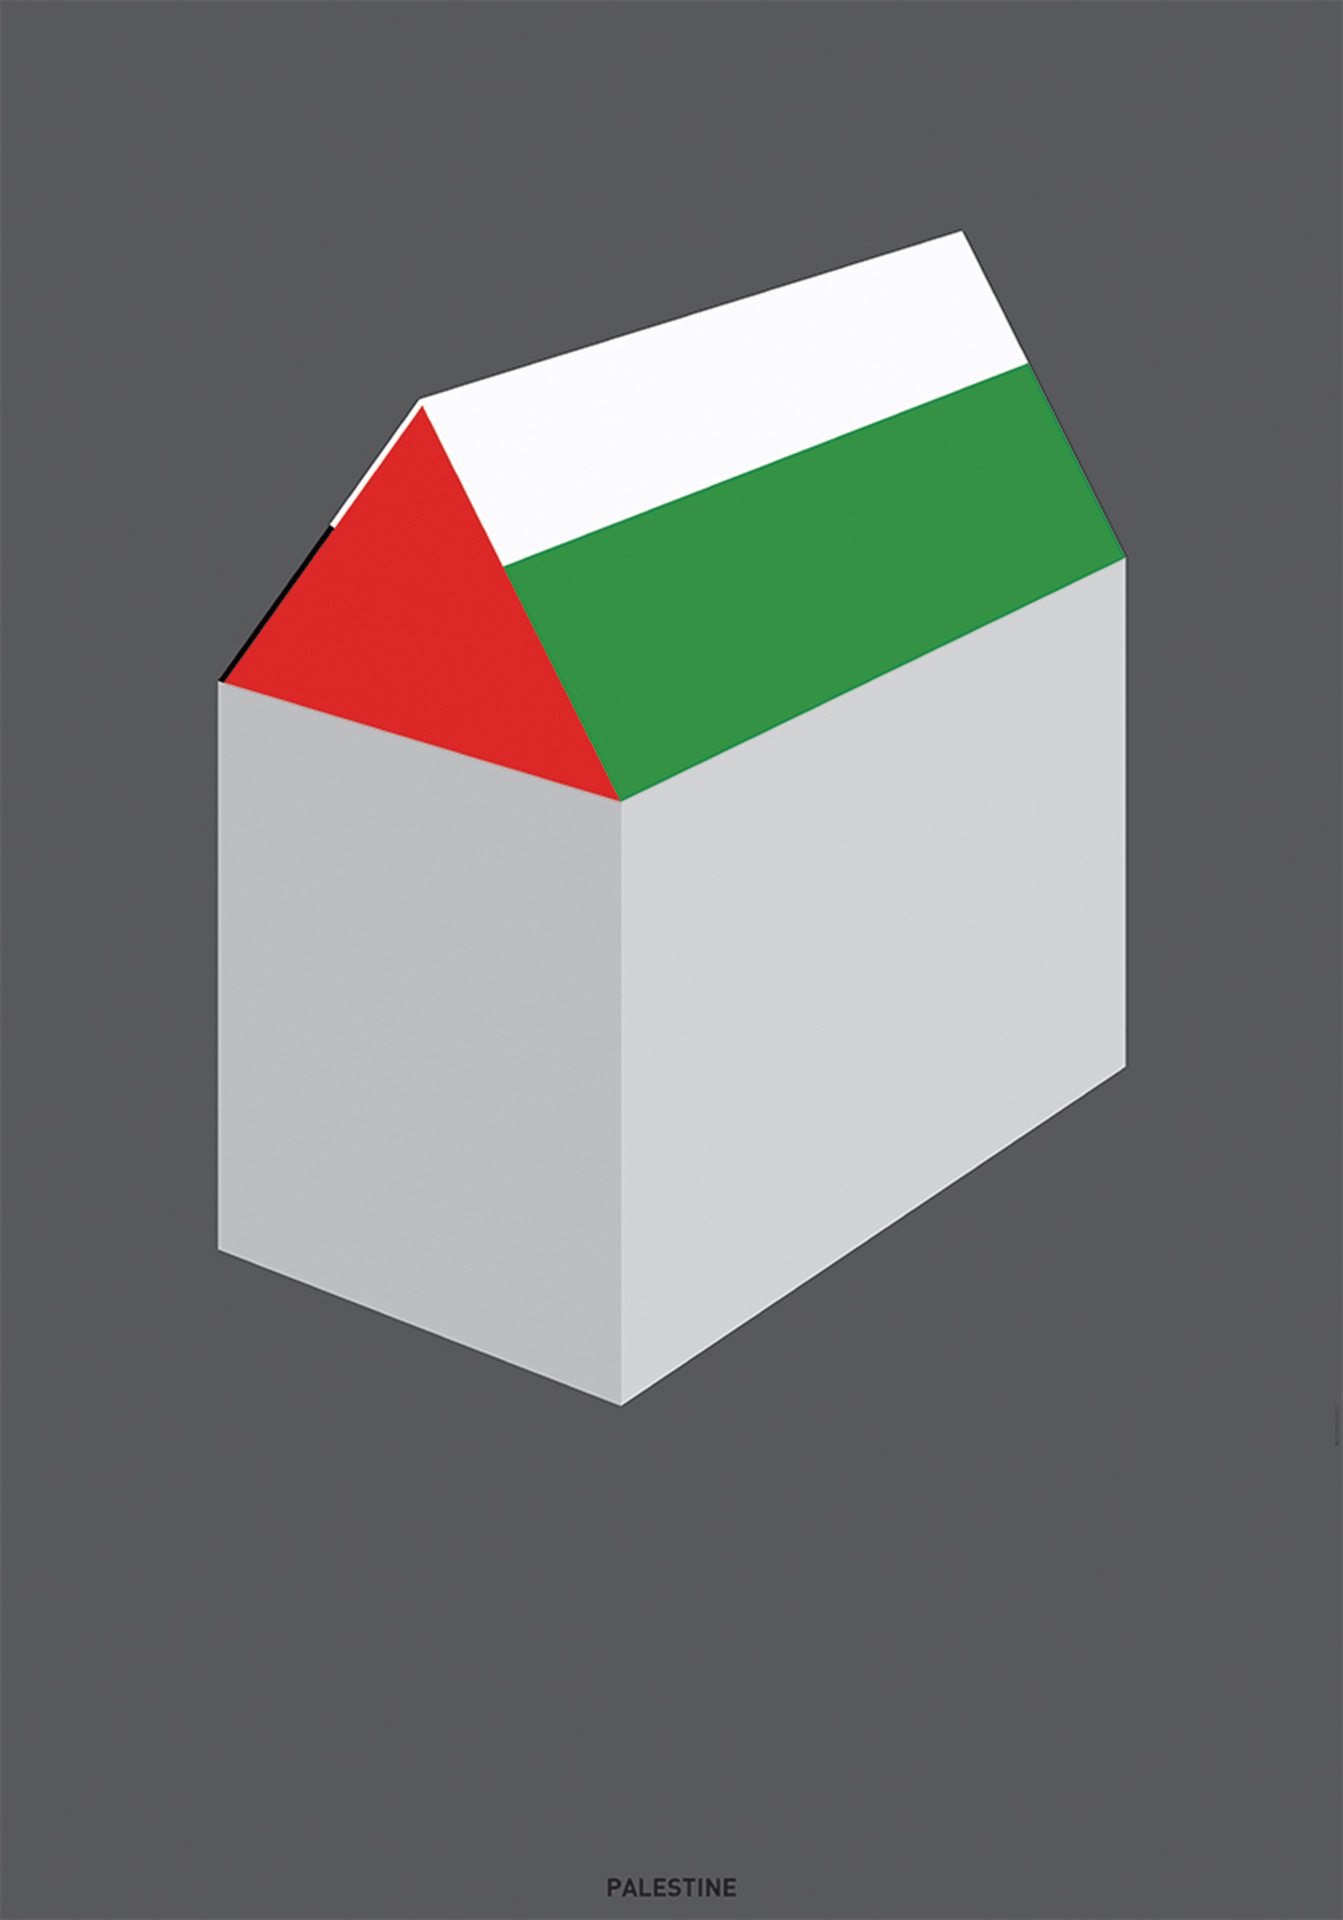 Ilustracja domu, którego dach jest w barwach flagi Palestyny.